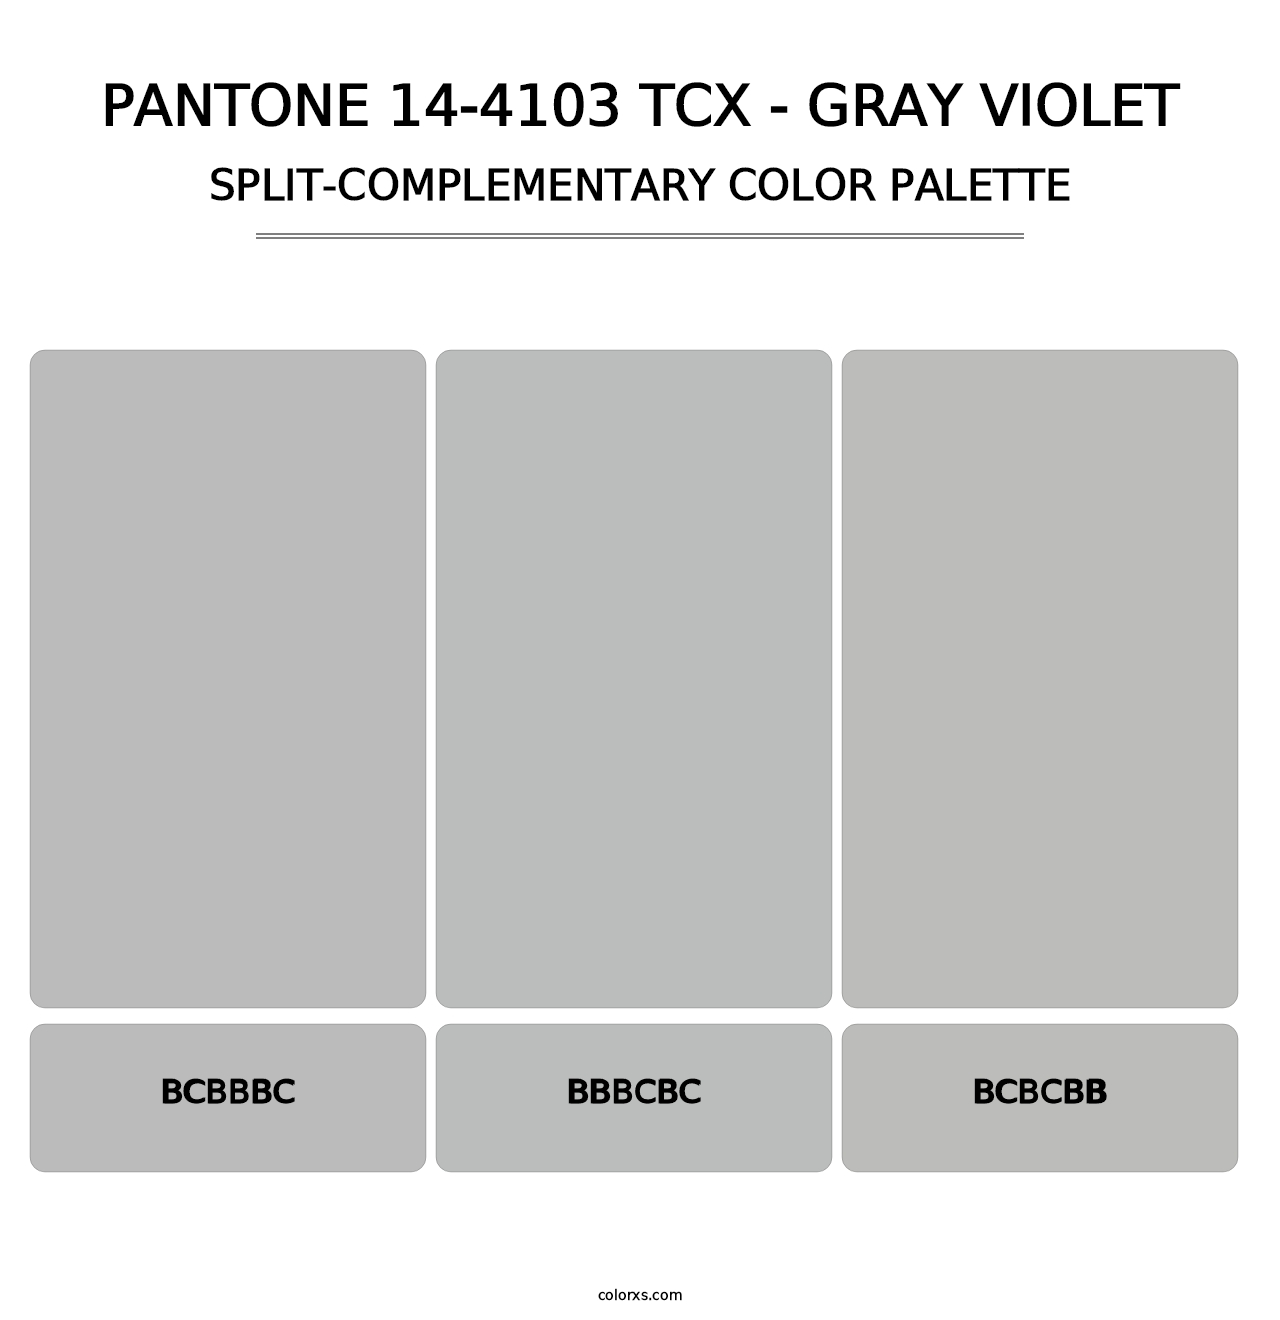 PANTONE 14-4103 TCX - Gray Violet - Split-Complementary Color Palette